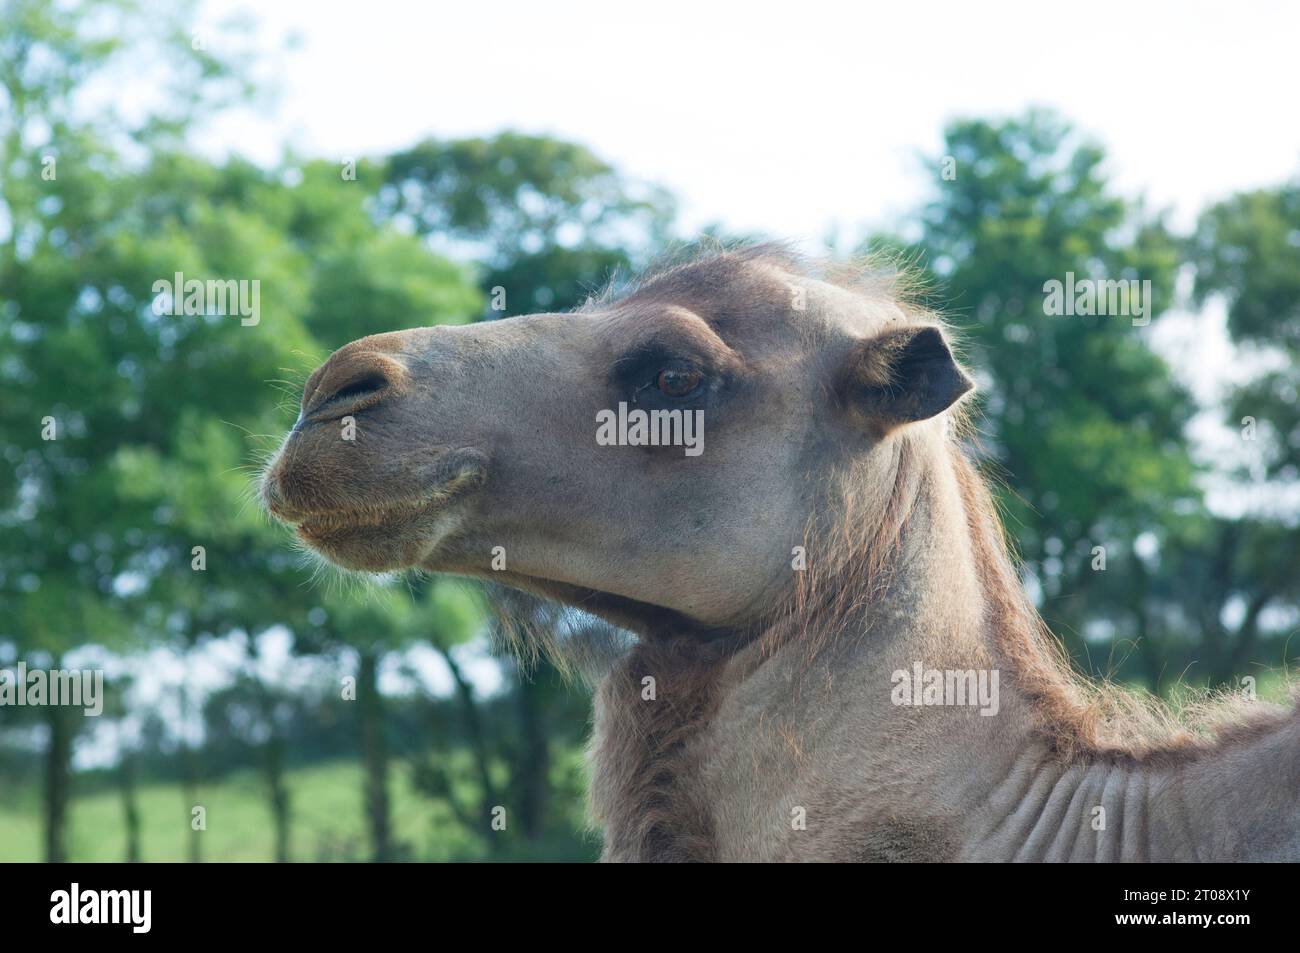 Primer plano de la cara de un camello disparado en una granja en el Reino Unido - John Gollop Foto de stock